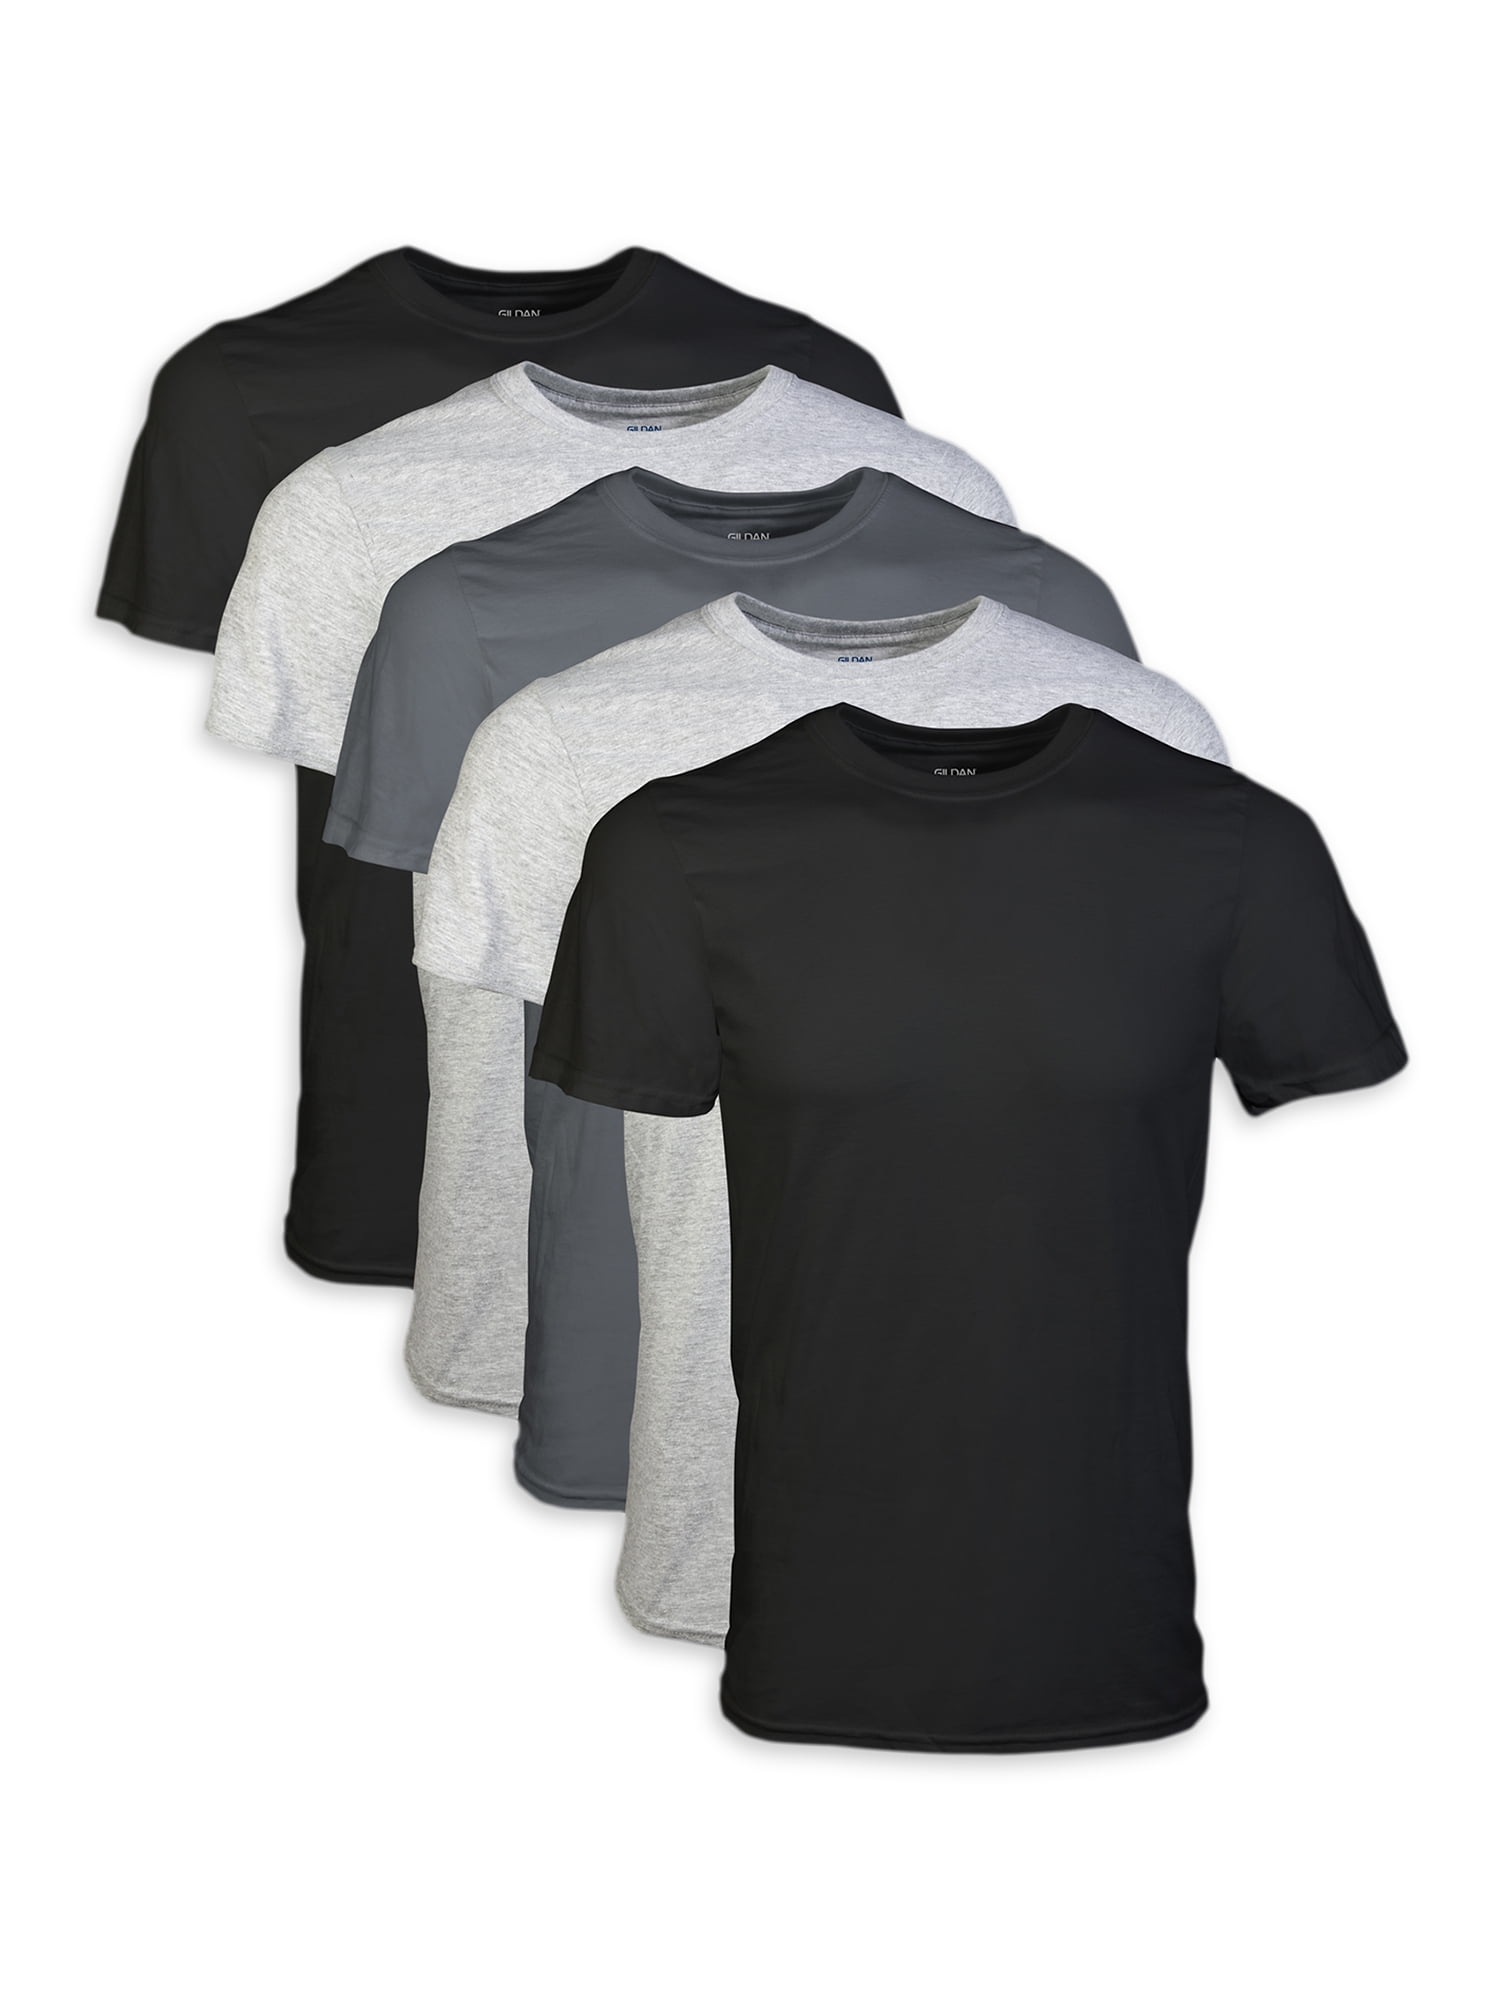 5 Pack Gildan Childrens T-Shirt Cotton Plain Boys Girls Black T Shirts S-XL Kids 